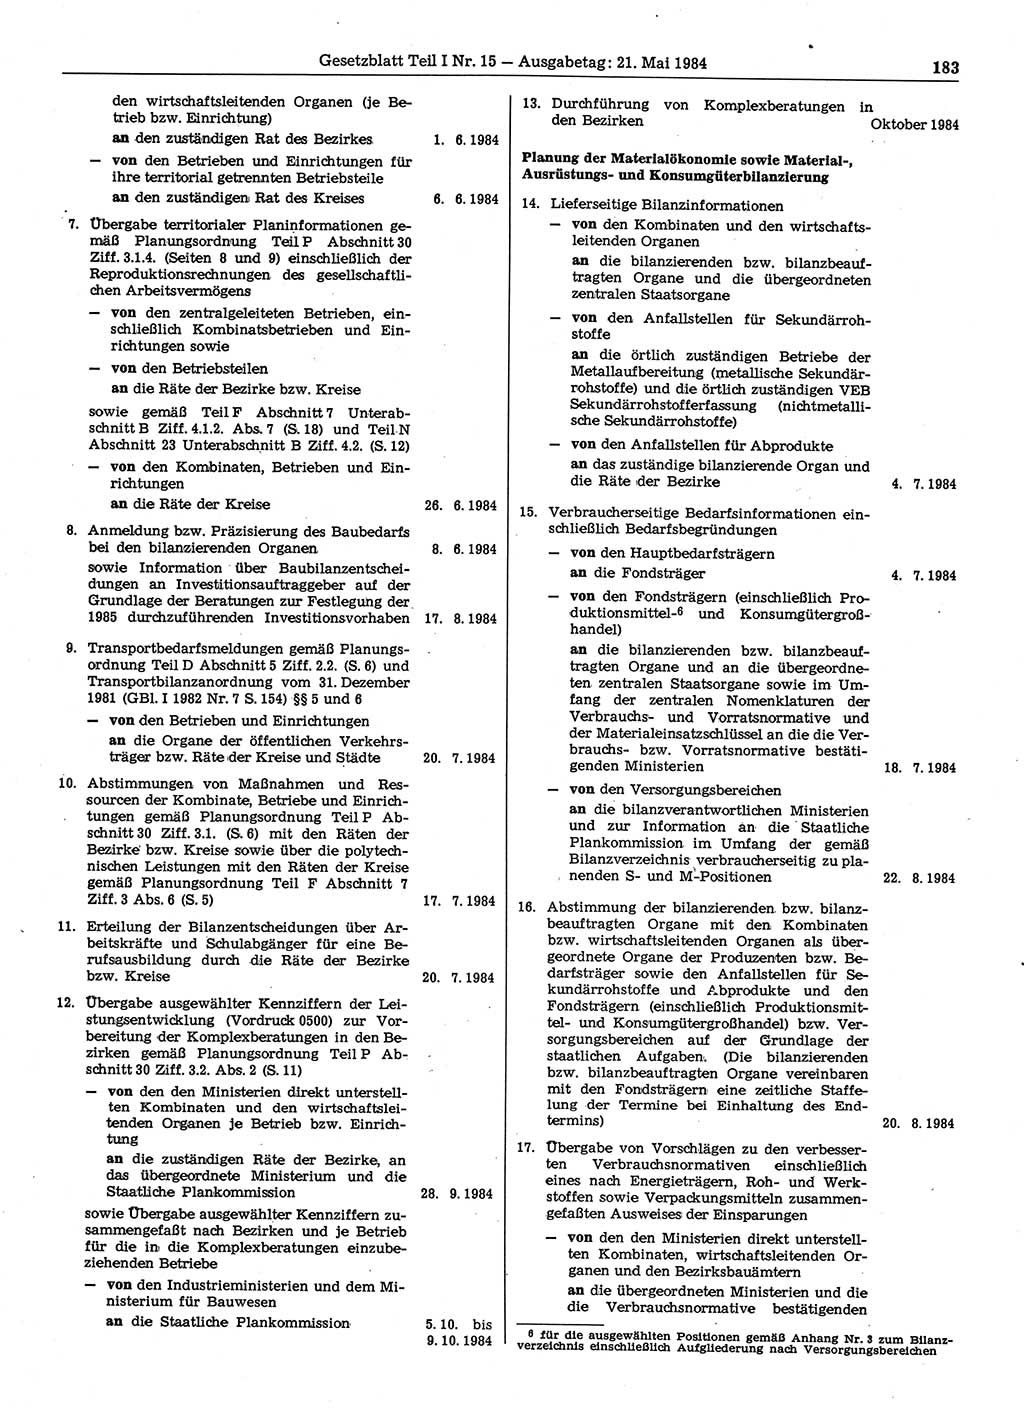 Gesetzblatt (GBl.) der Deutschen Demokratischen Republik (DDR) Teil Ⅰ 1984, Seite 183 (GBl. DDR Ⅰ 1984, S. 183)